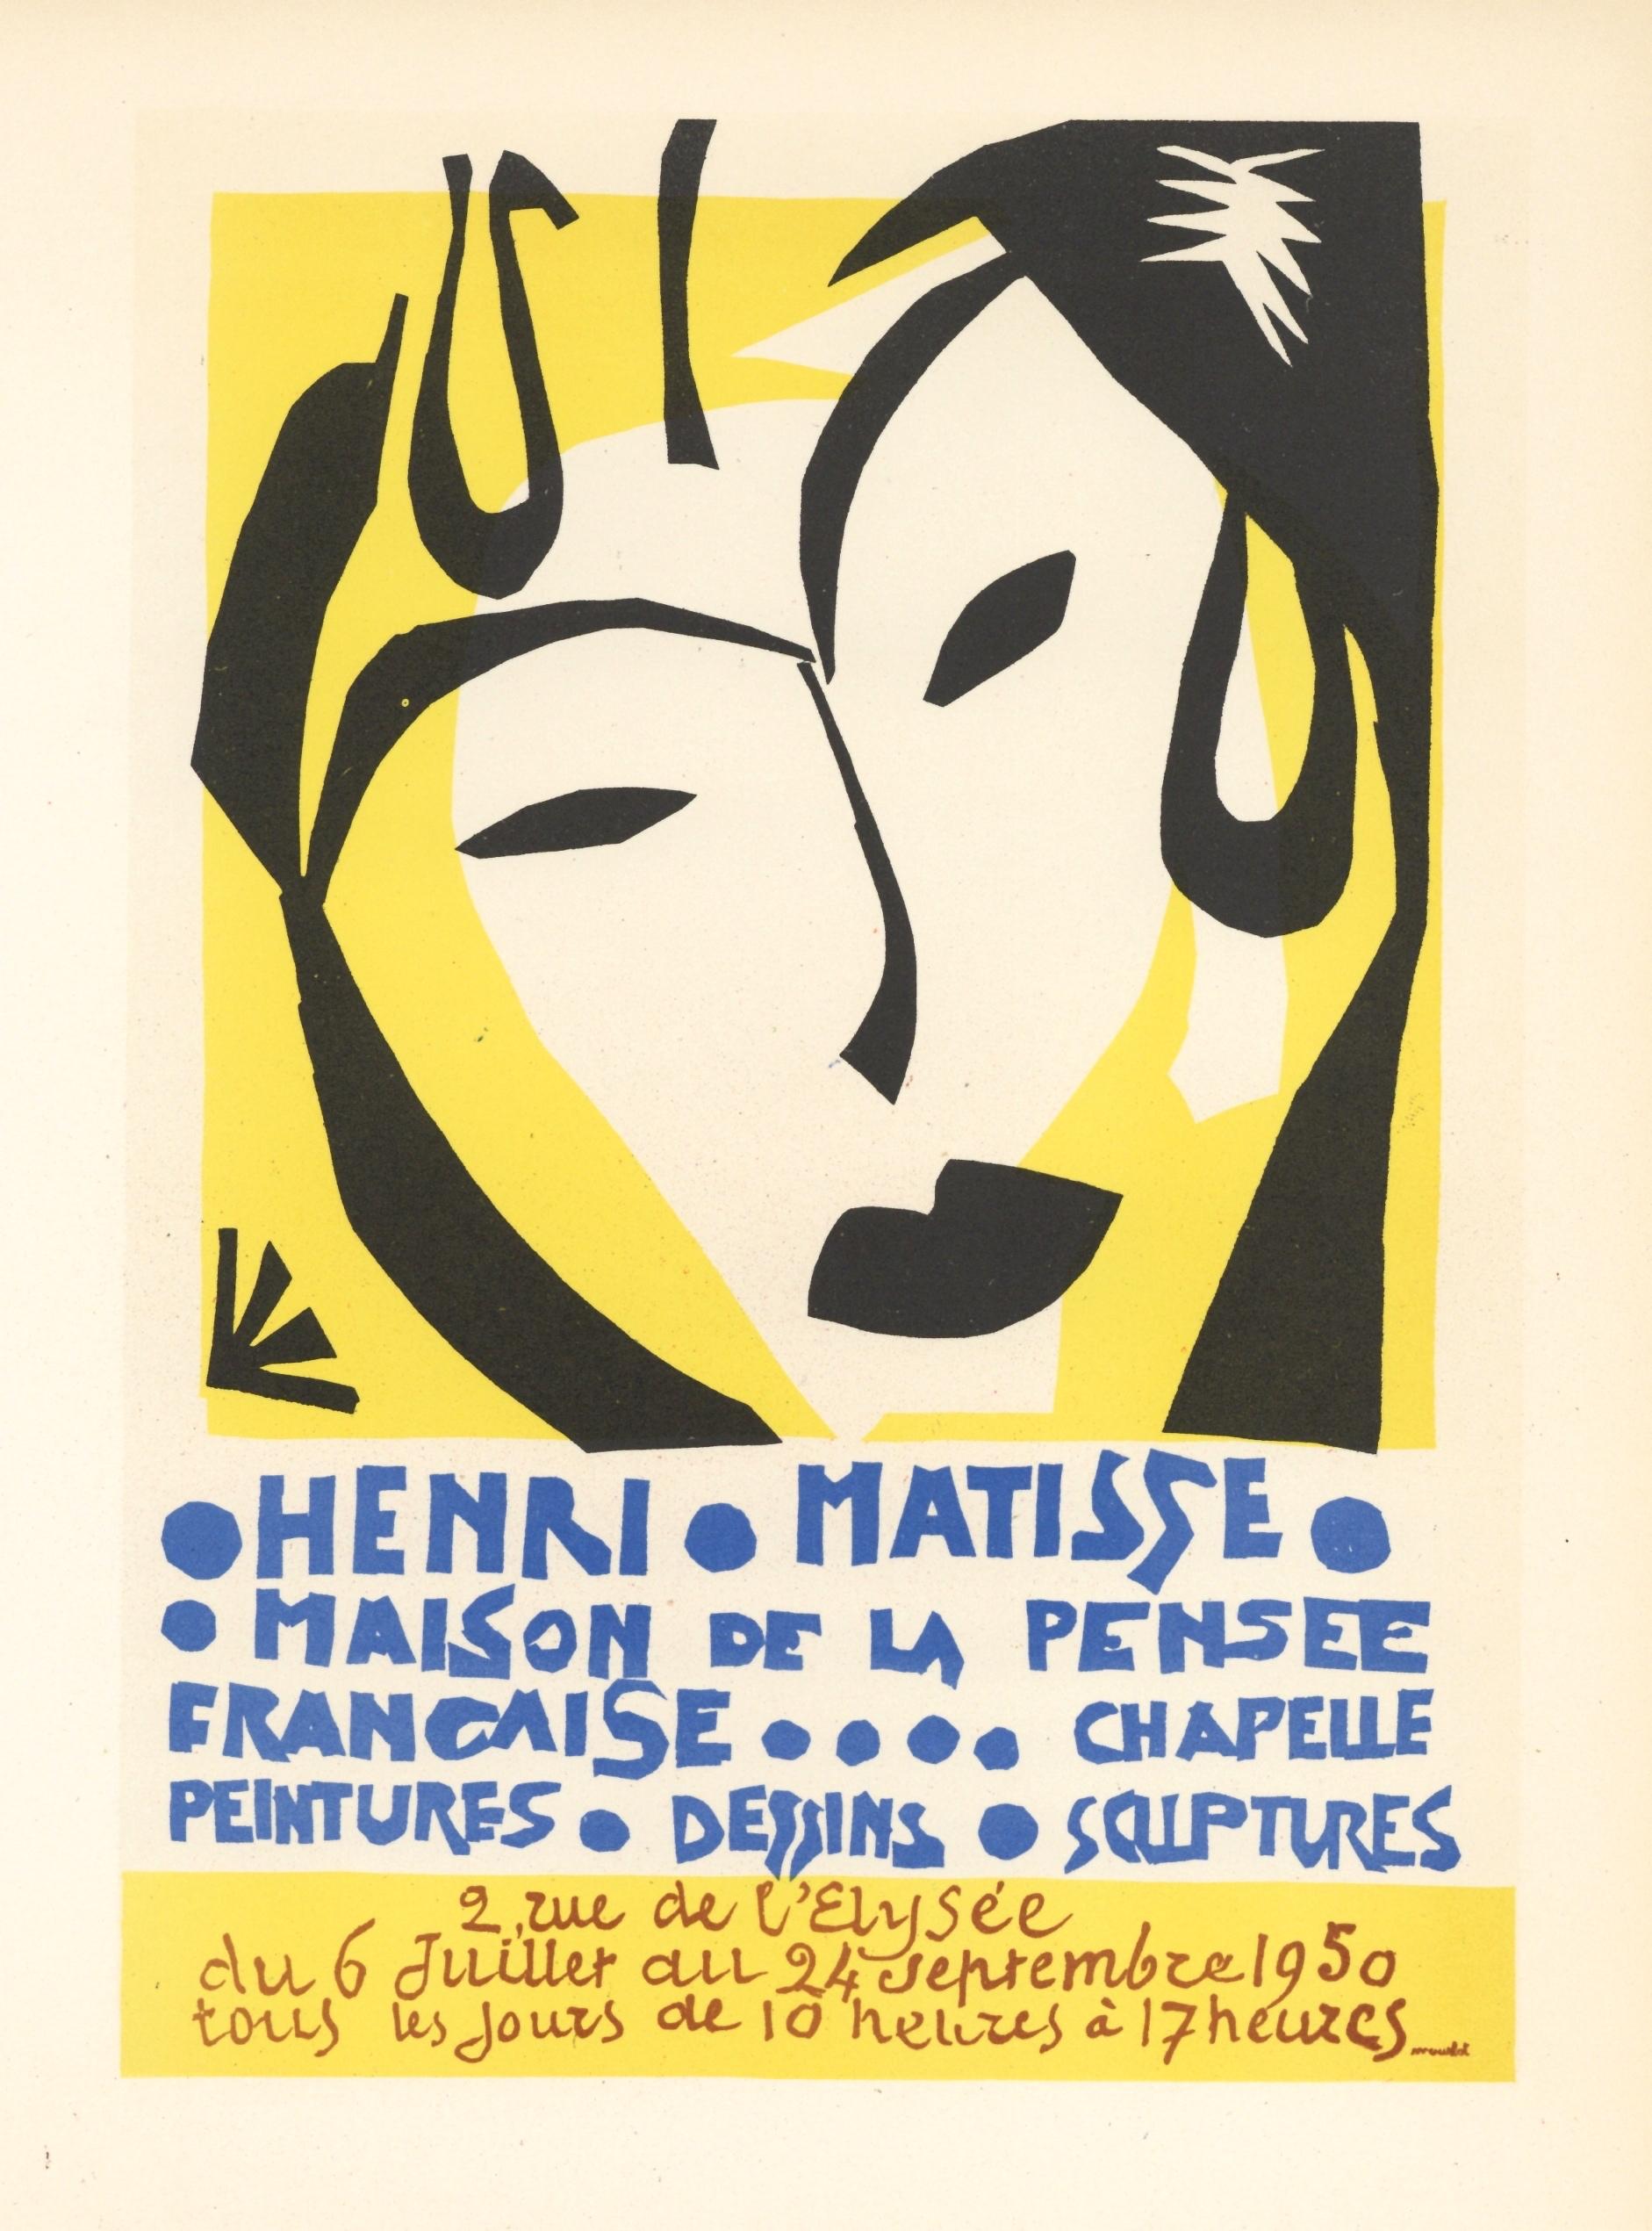 (after) Henri Matisse Portrait Print - "Maison de la Pensee" lithograph poster